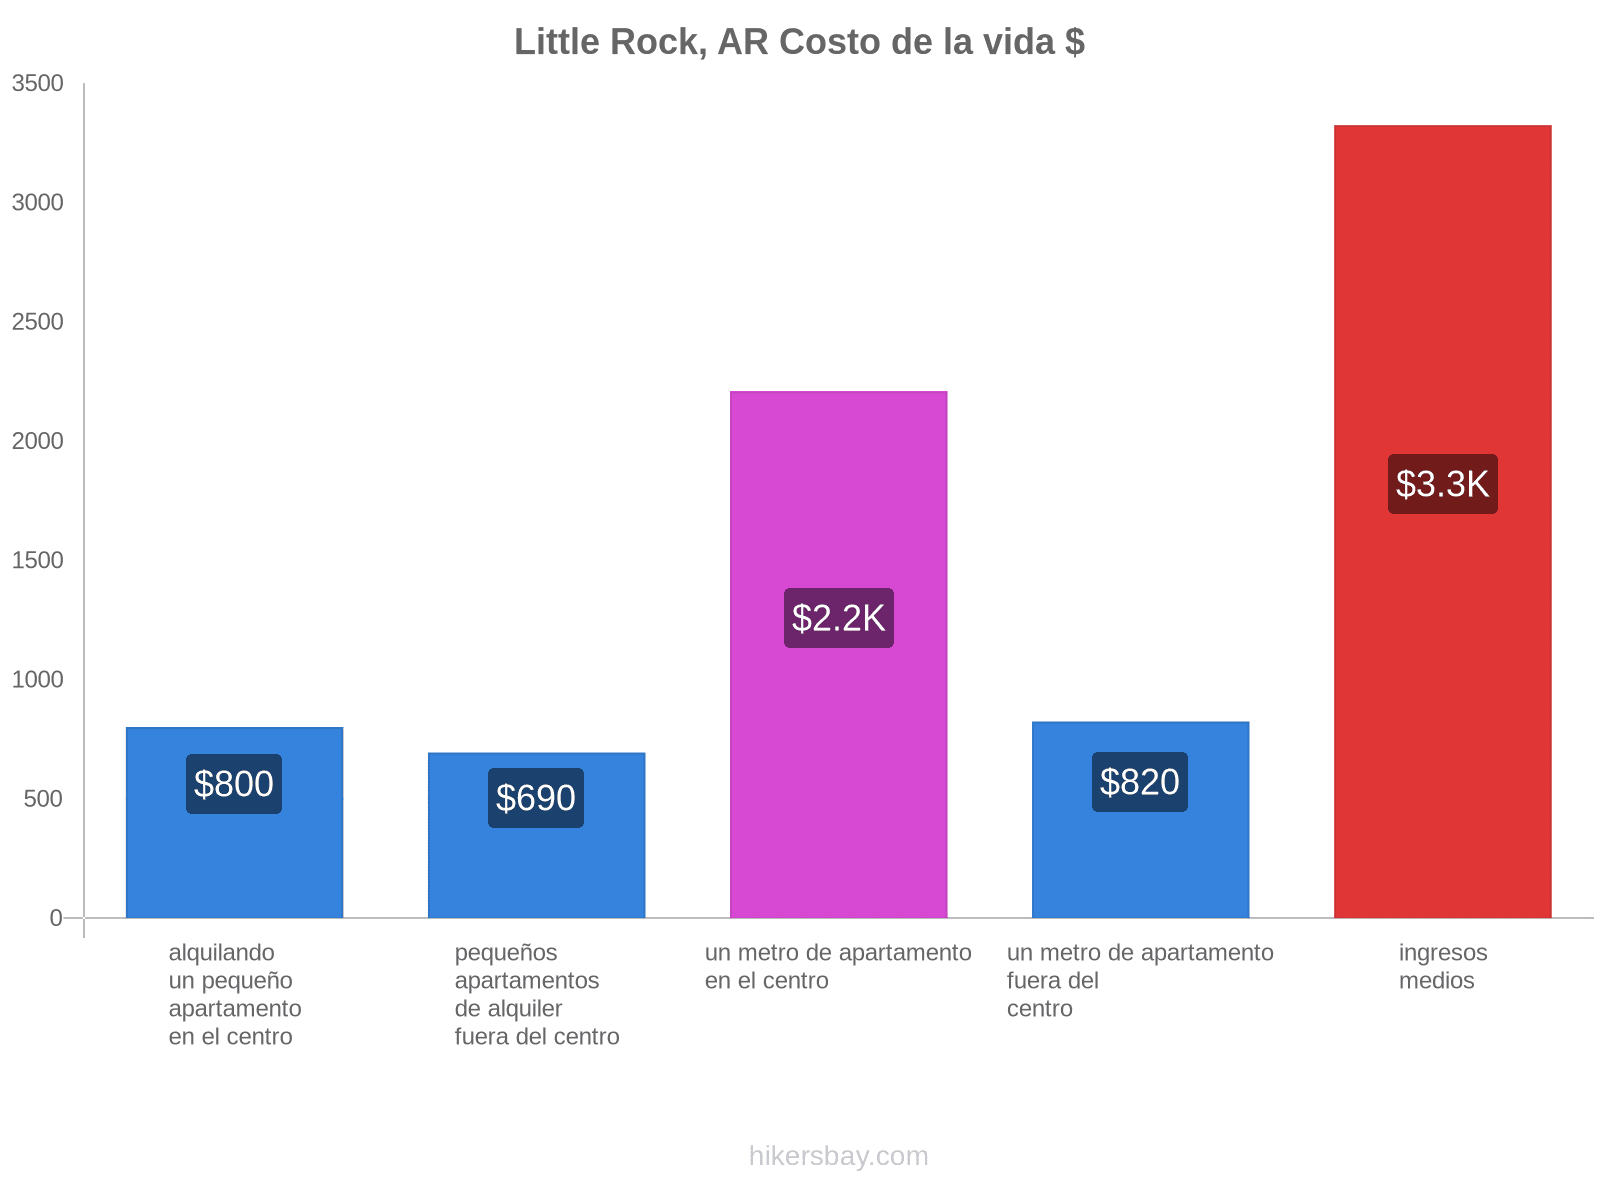 Little Rock, AR costo de la vida hikersbay.com